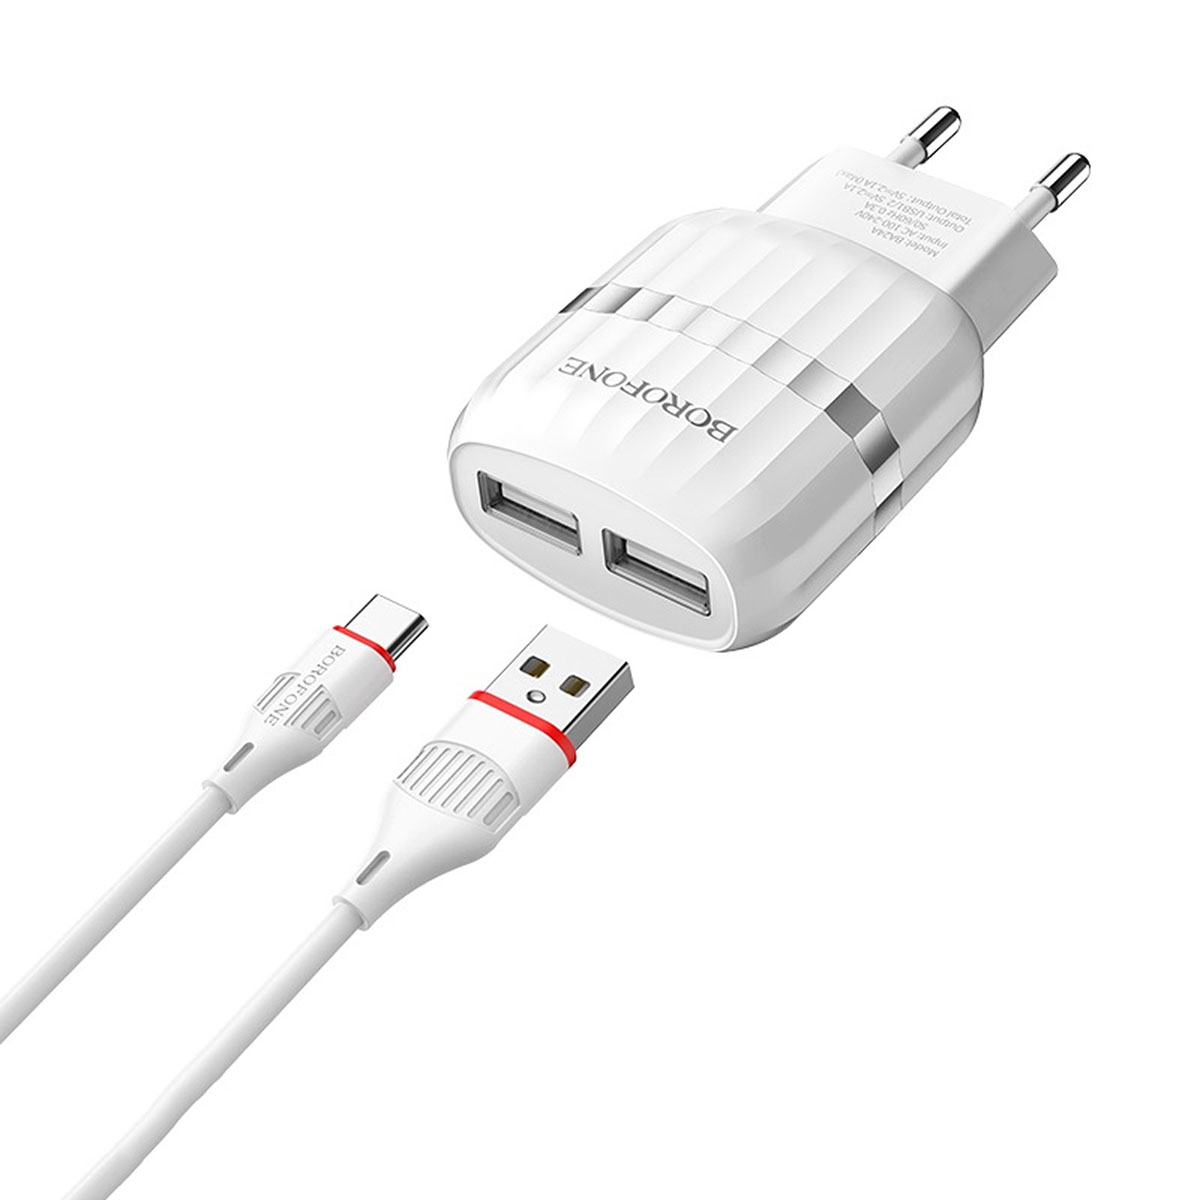 BOROFONE BA24A Vigour СЗУ 2 в 1 (сетевое зарядное устройство 5V-2.1A) + кабель USB-C aka Type-C, длина 1 метр, цвет белый.